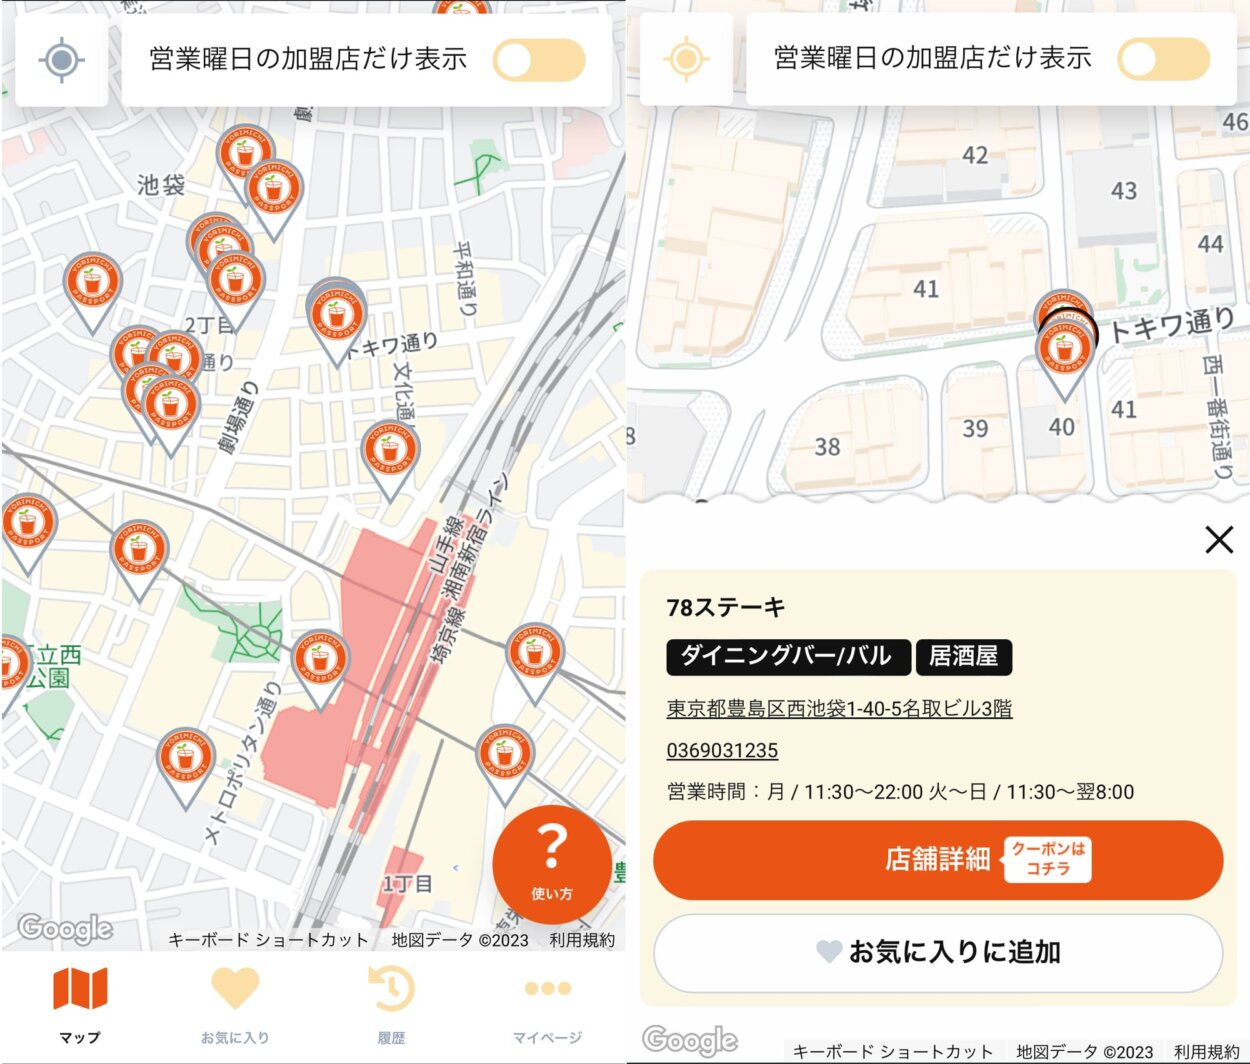 MAP画面。ポイントをタップすると店舗情報が表示される